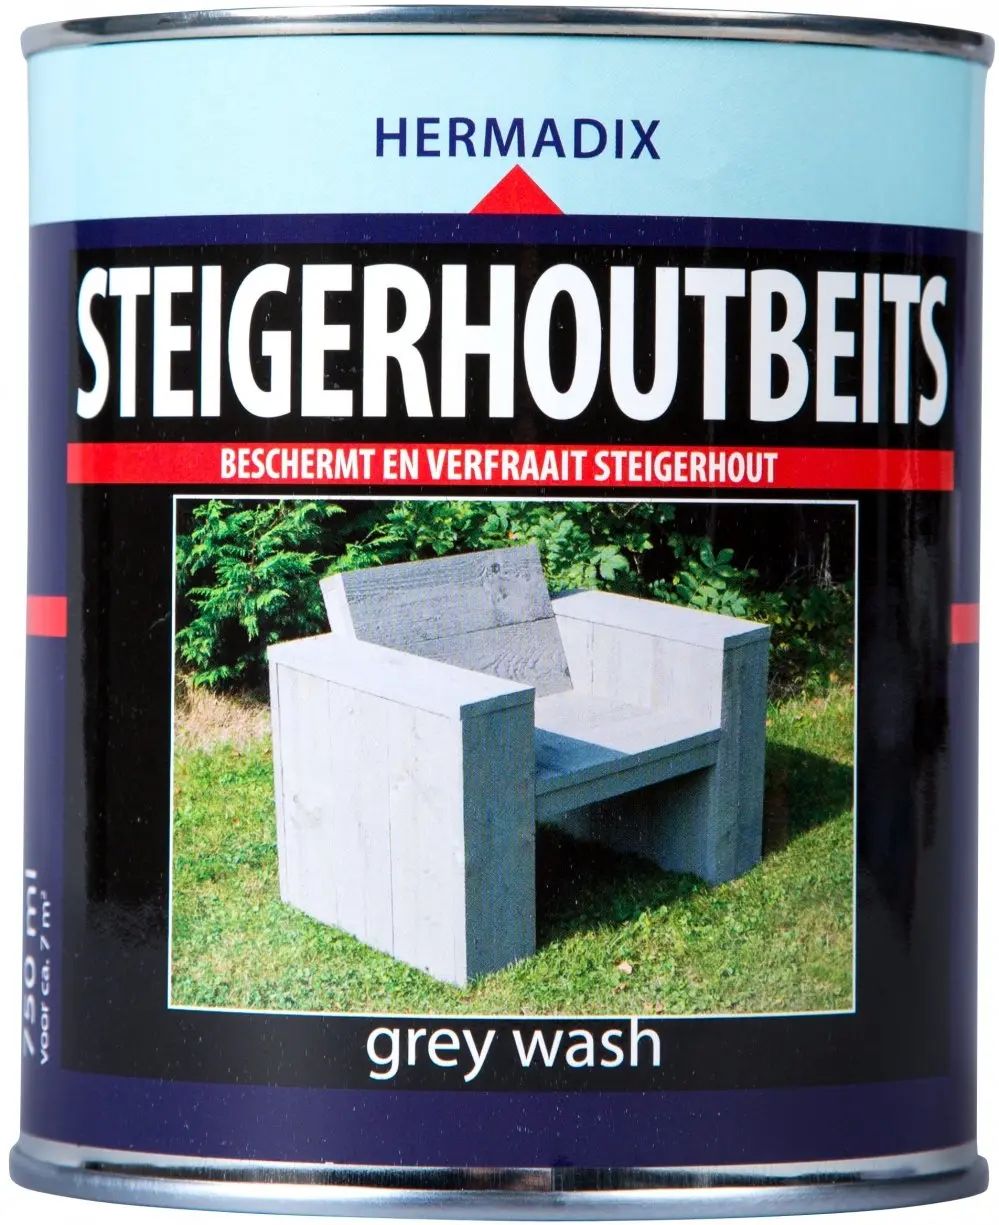 Hermadix - Steigerhoutbeits%20-%20Grey%20Wash-1